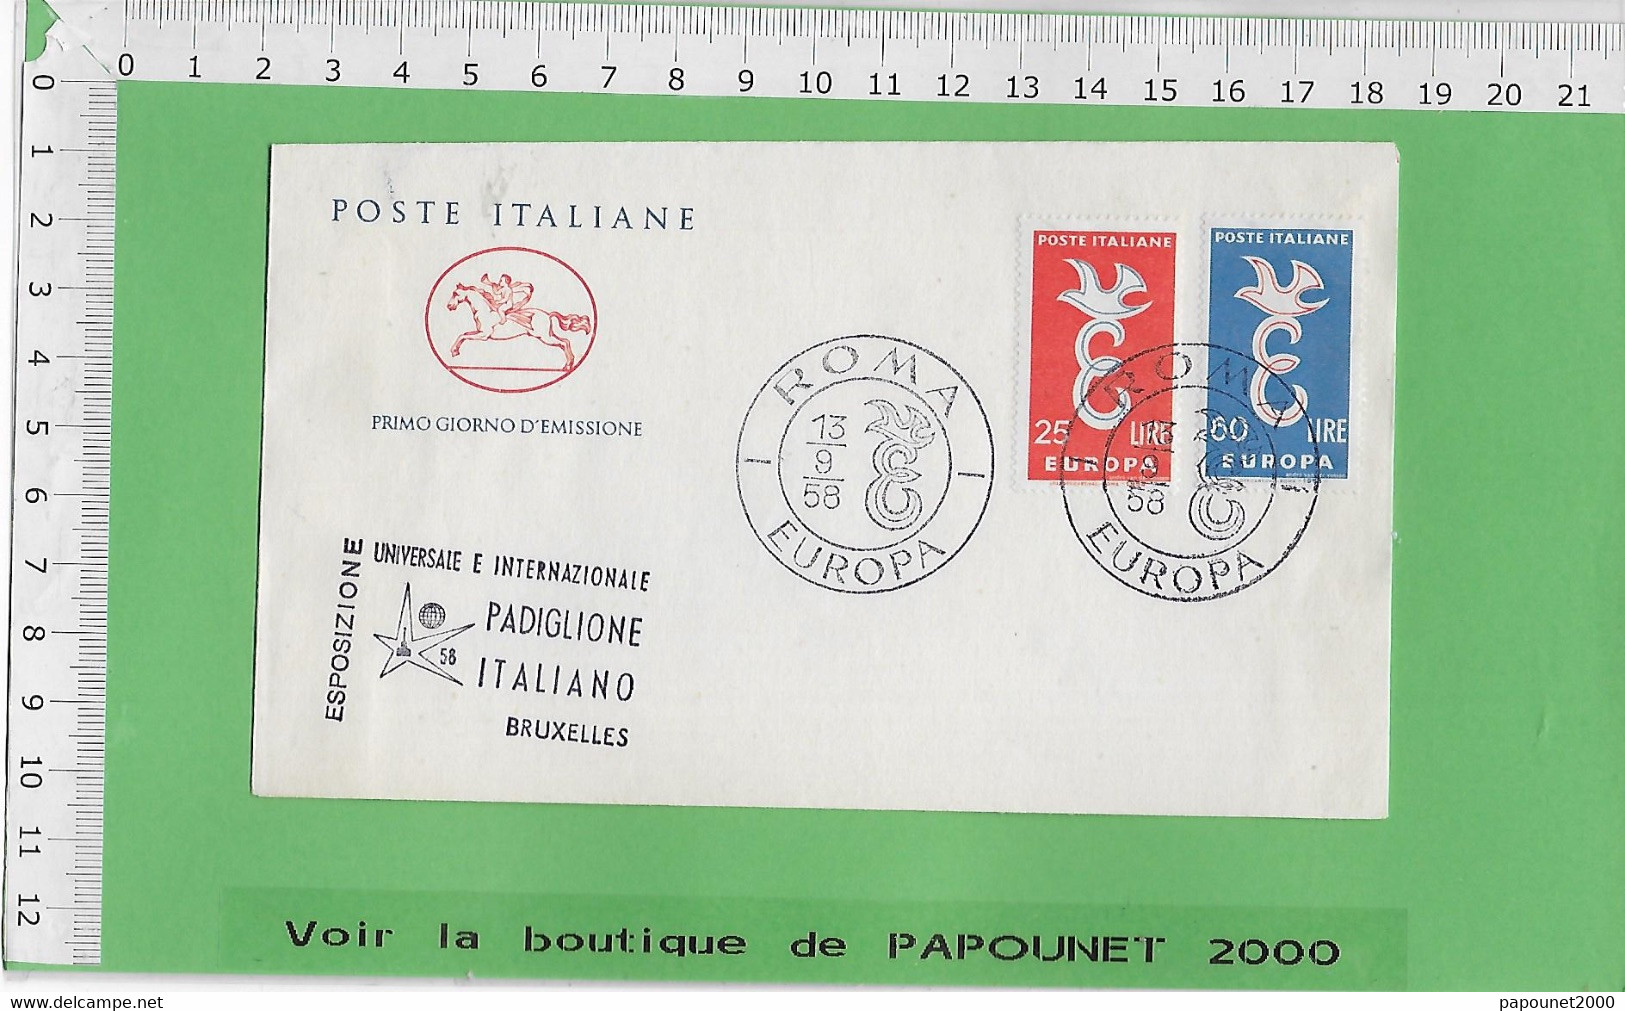 02578 - E BE04 1000-EXPO 58 : Timbre*Enveloppe / PRIMO GIORNO D EMISSIONE: PAVILLON ITALIEN - 1958 – Brussels (Belgium)